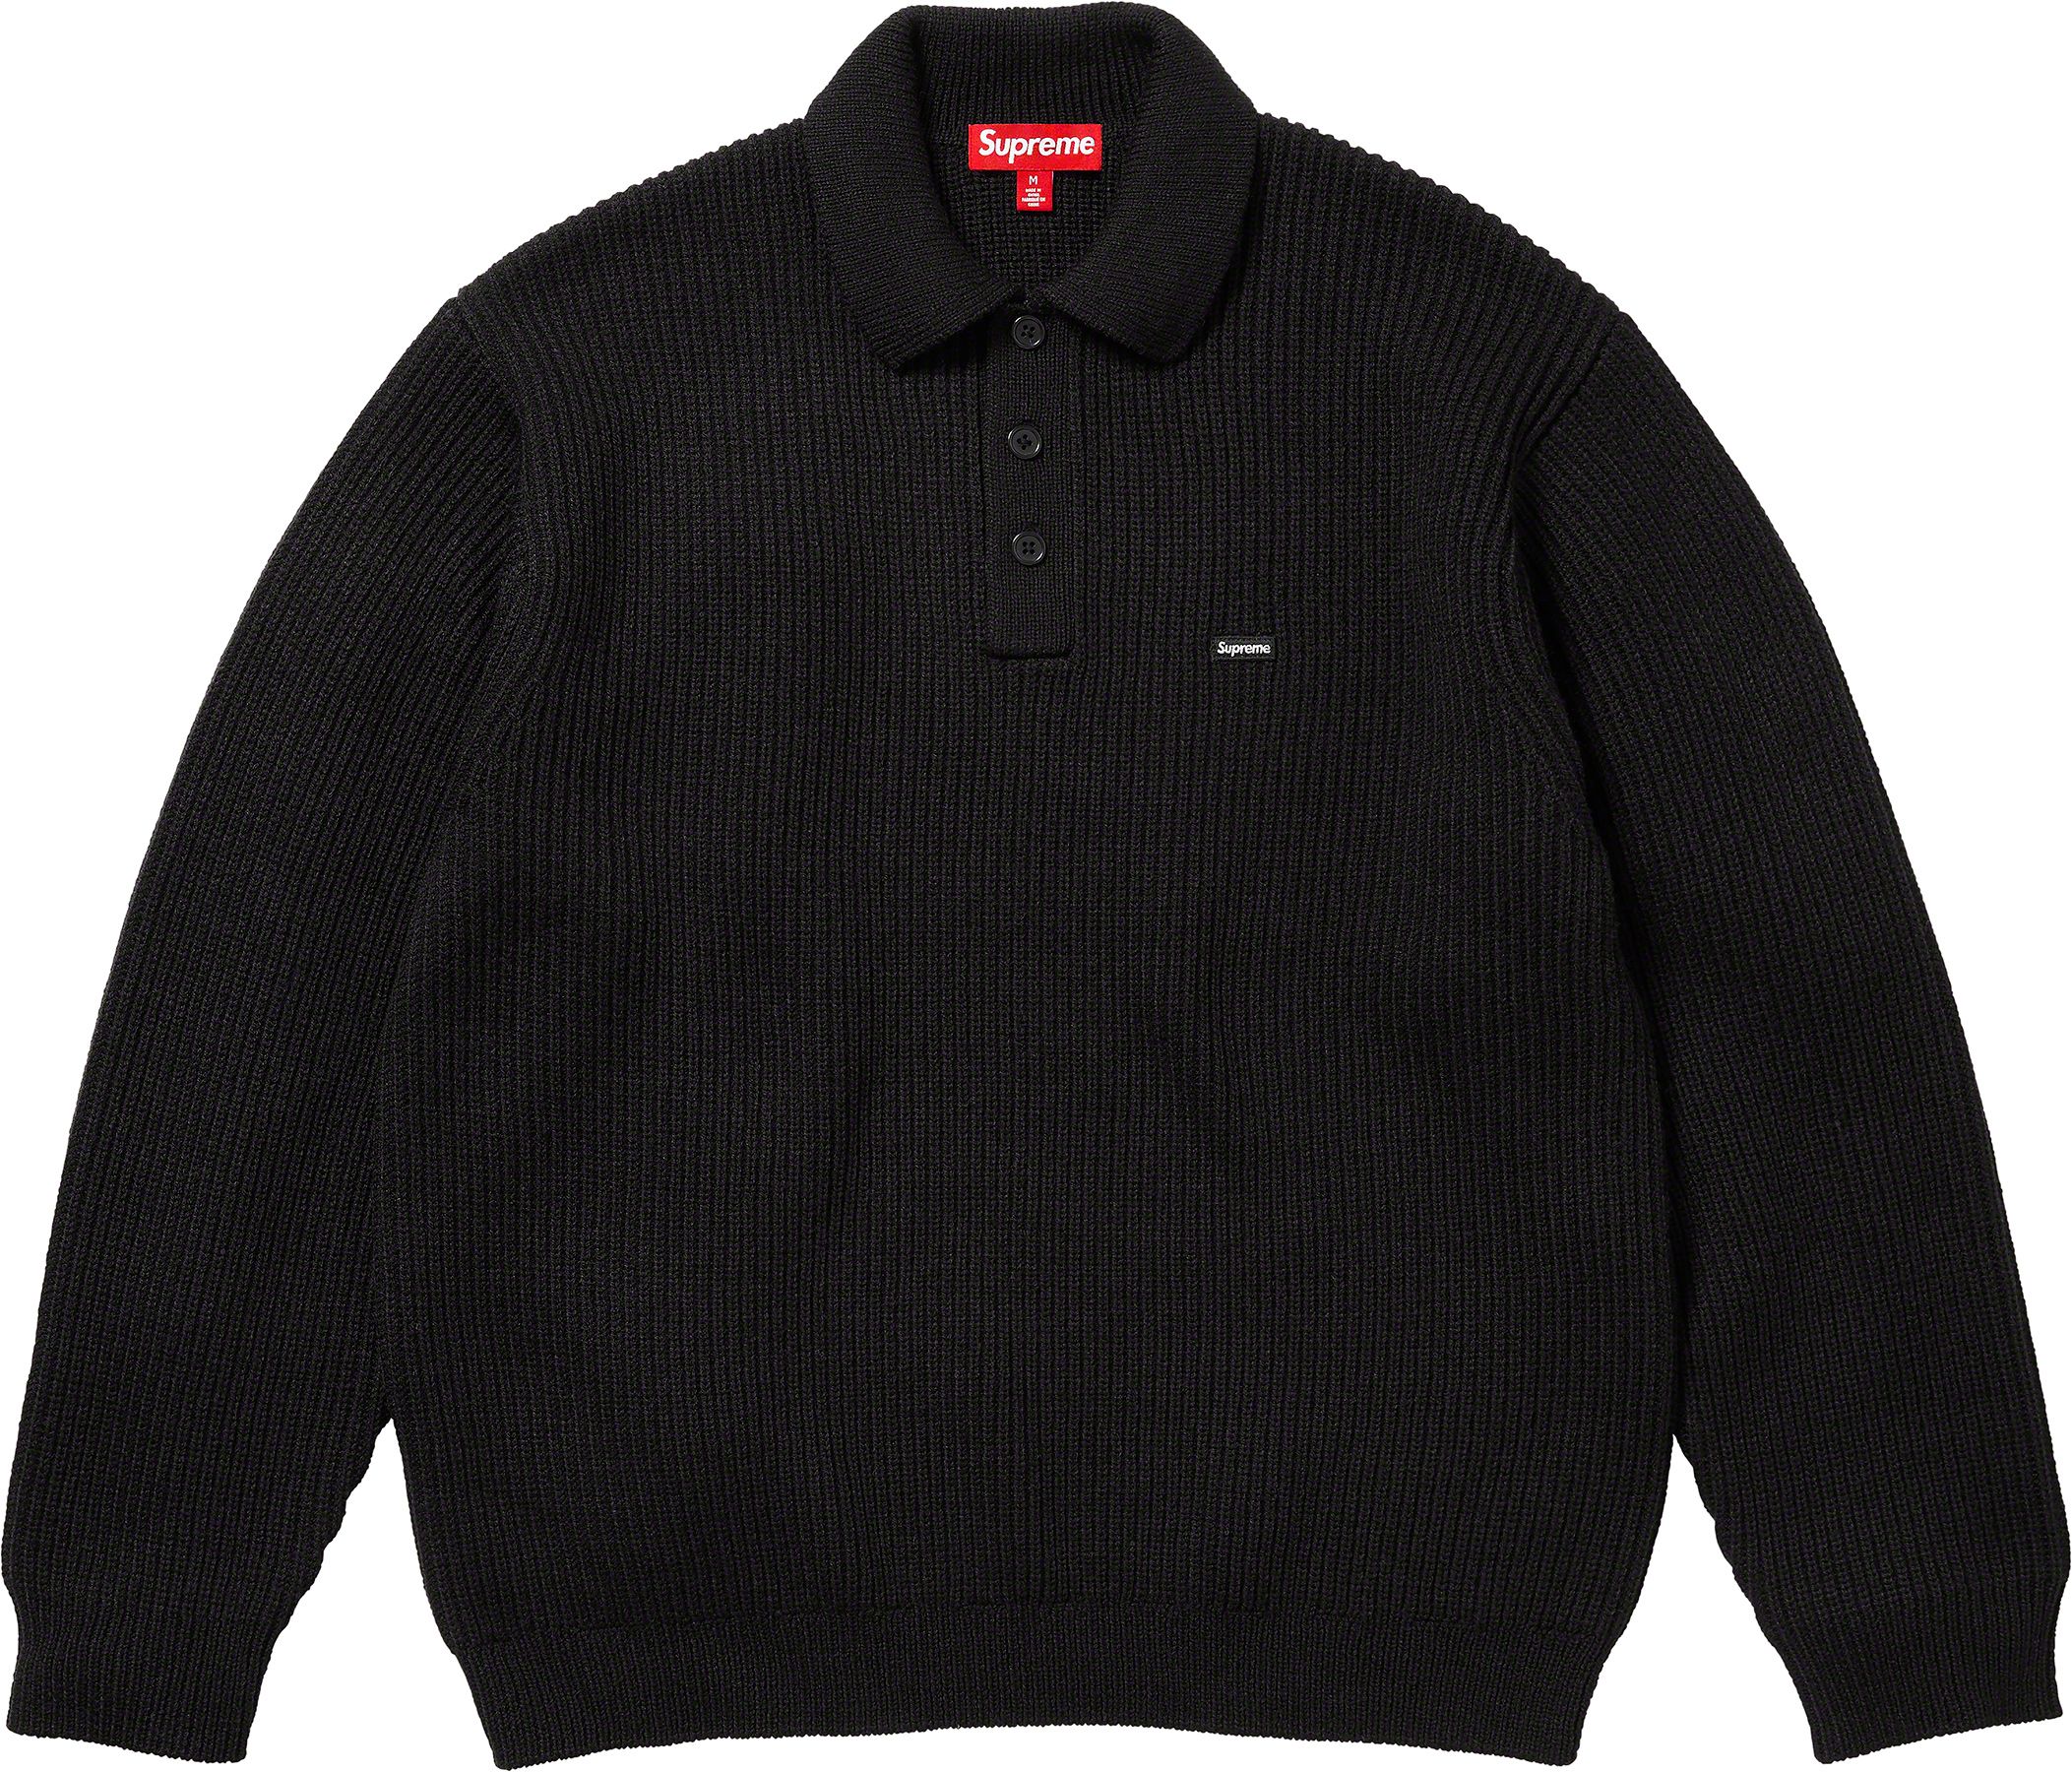 supremeSupreme Small Box Polo Sweater